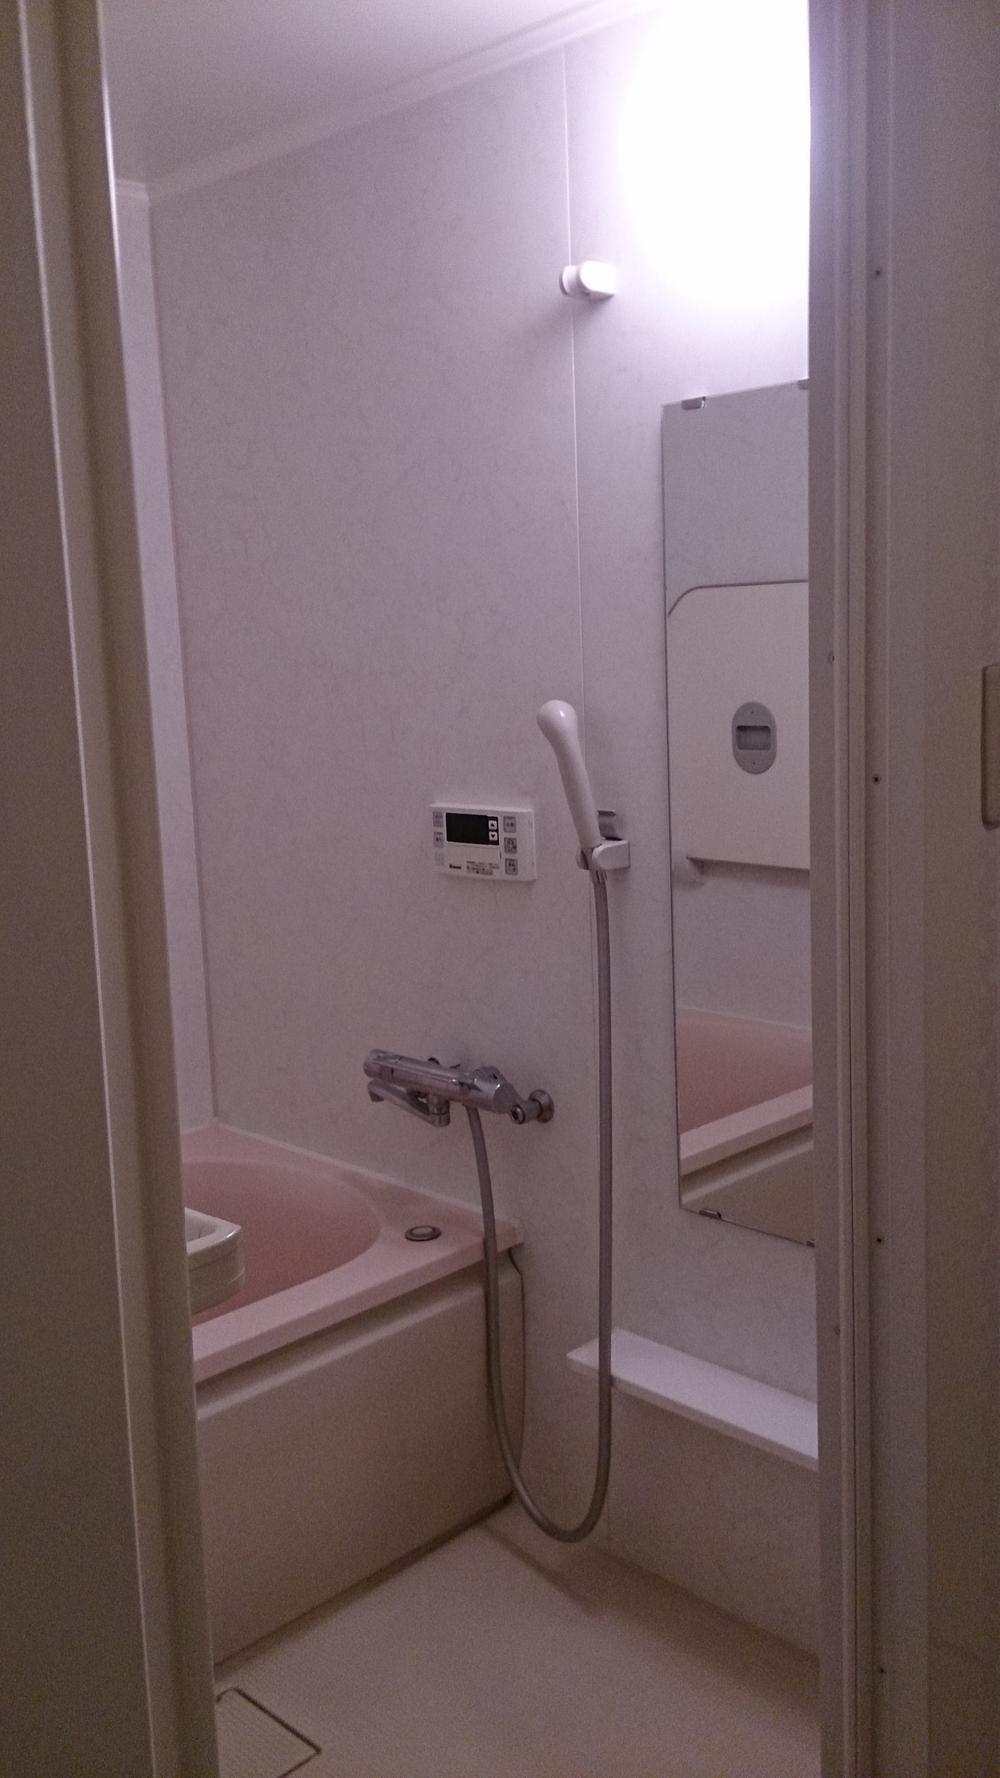 Bathroom. Interior